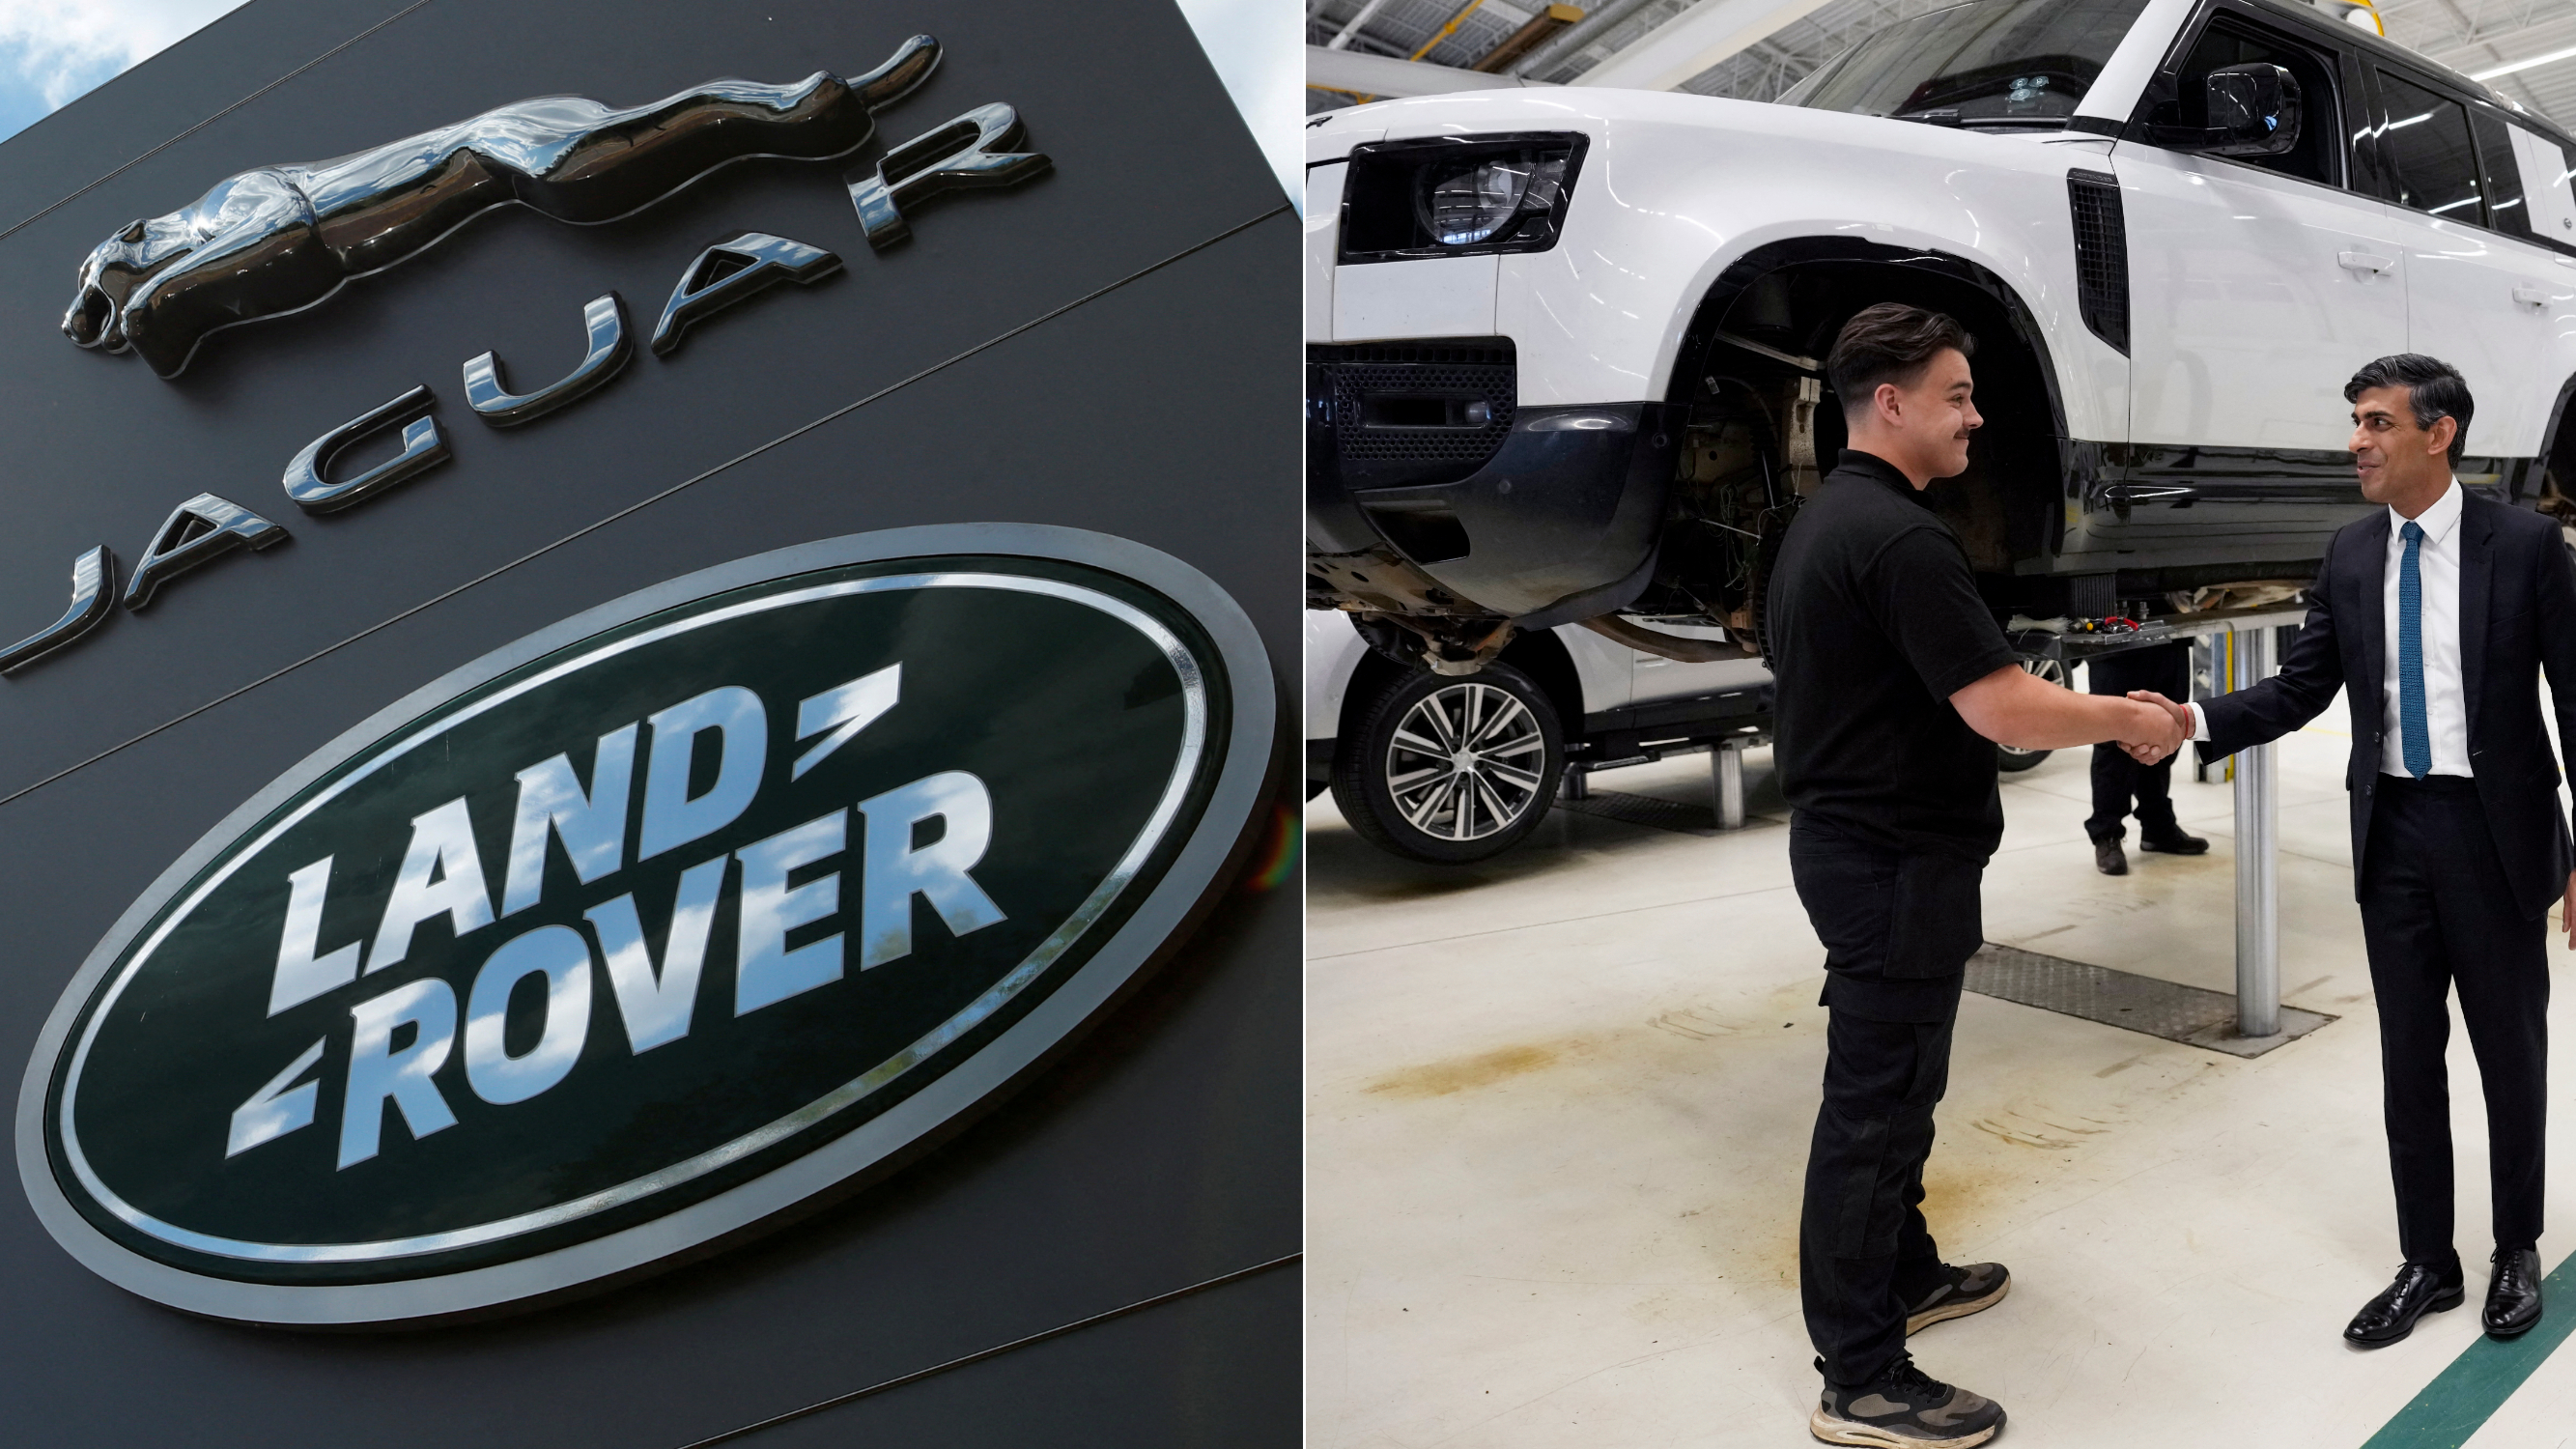 El primer ministro británico, Rishi Sunak, visitó la fábrica de Land Rover para anunciar el acuerdo para las baterías de automóviles Tata.  / Christopher Furlong / AFP 